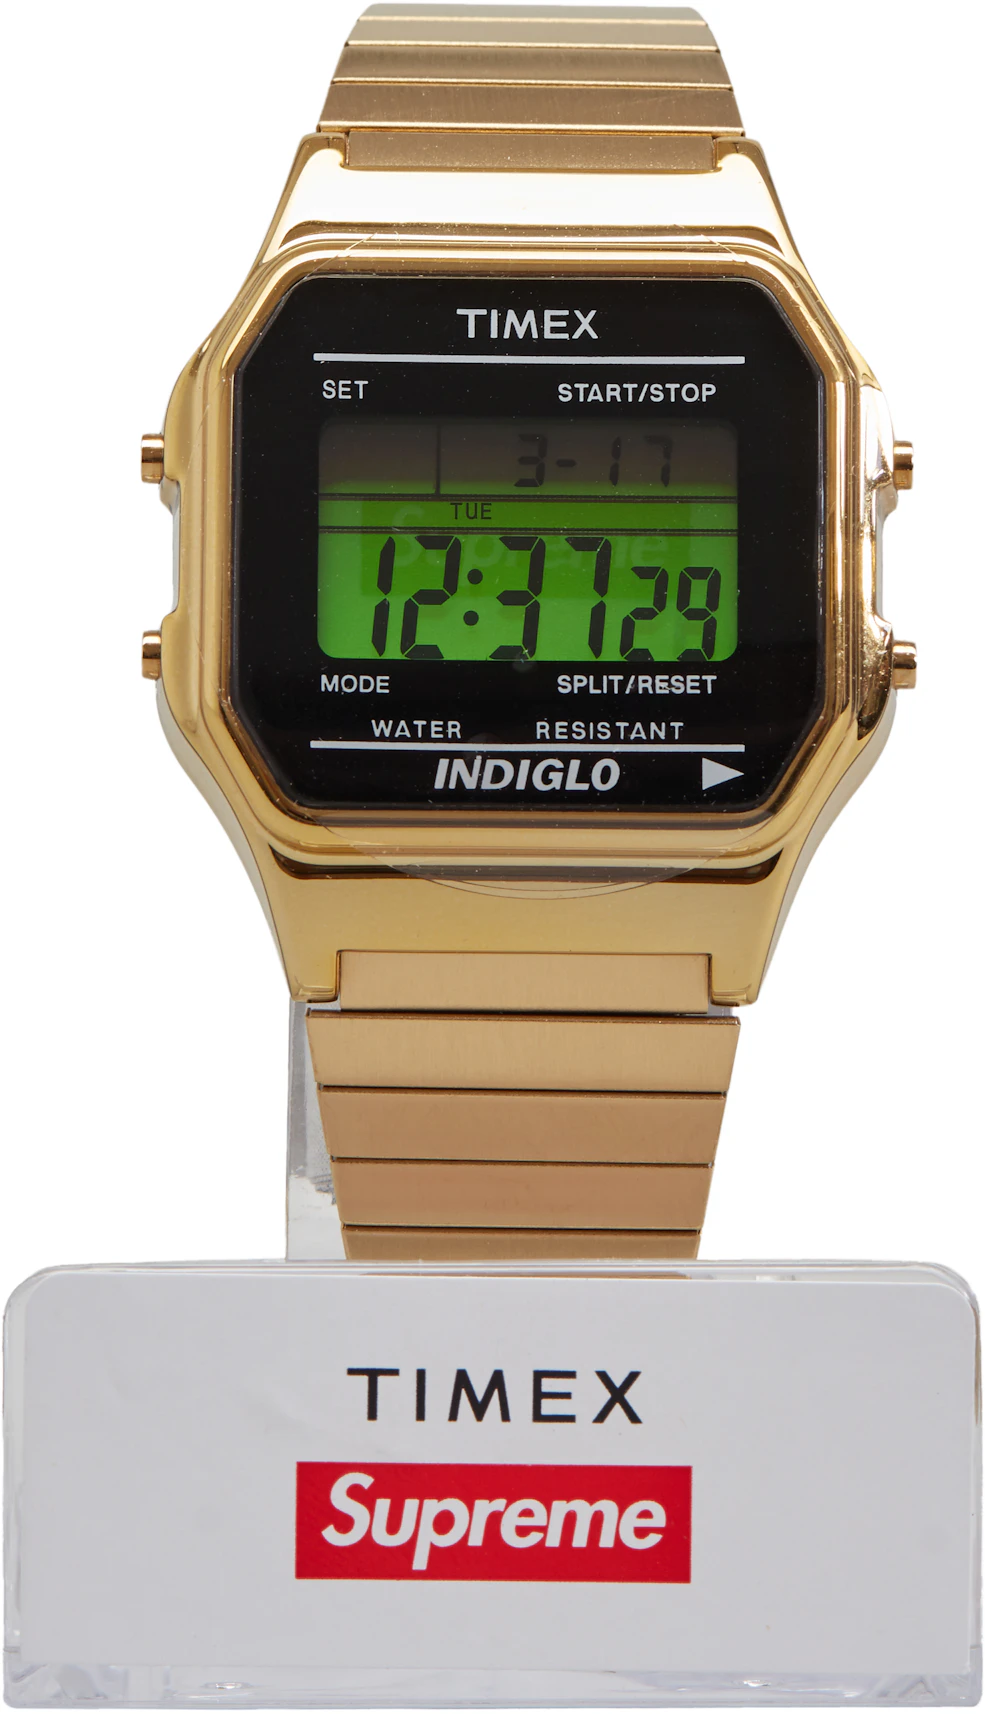 Supreme Timex Digital Watch Gold - FW19 - US